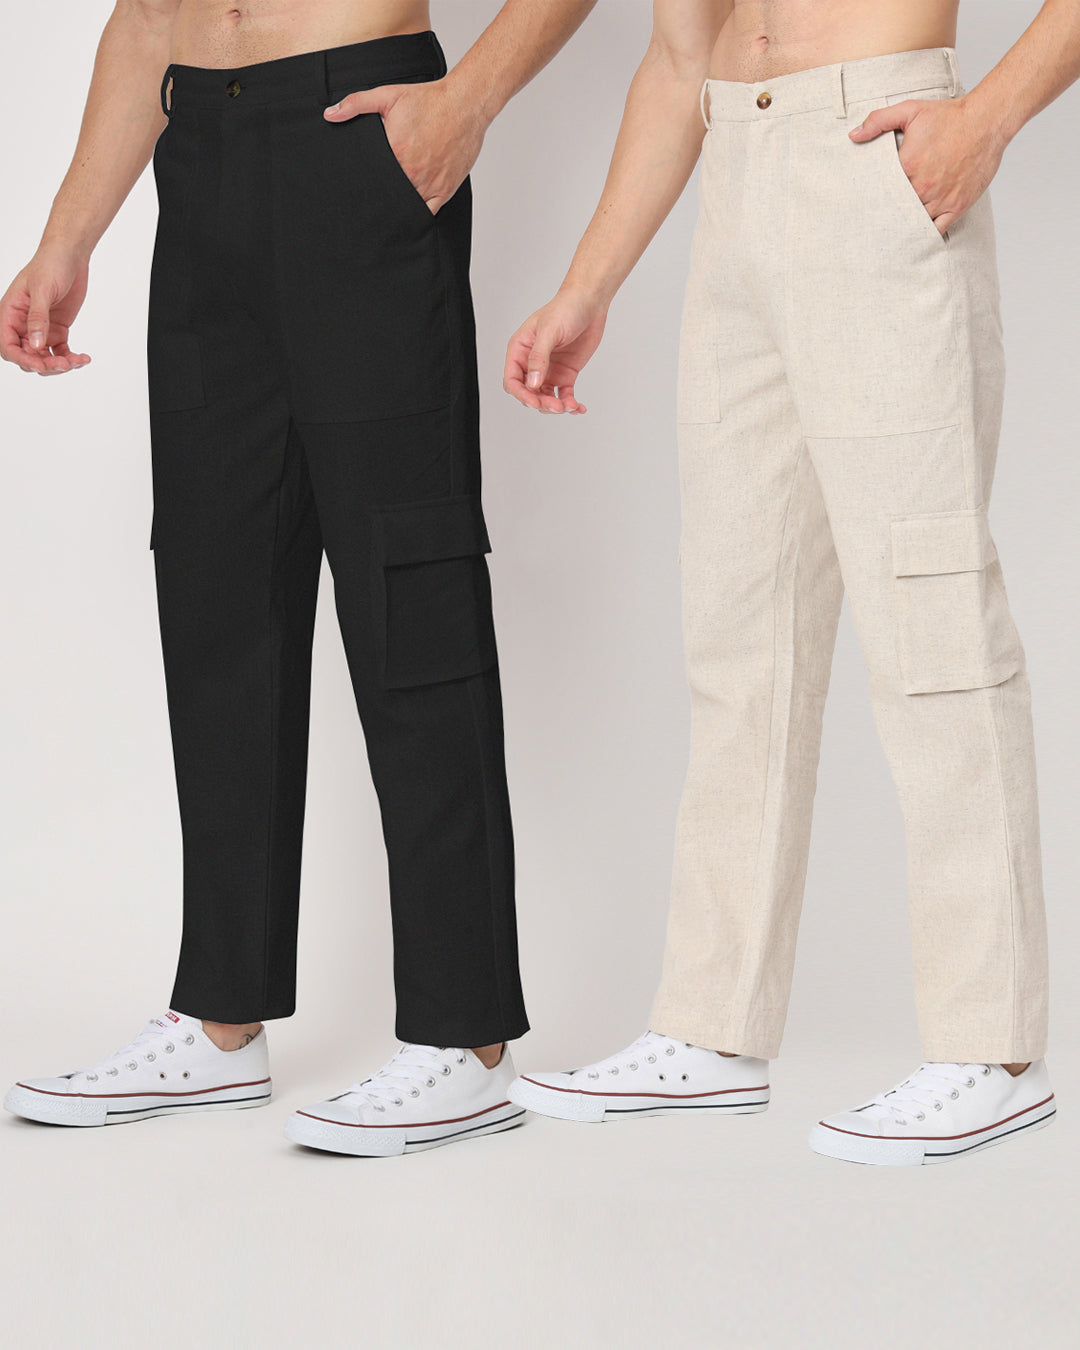 Combo: Function Flex Beige & Black Men's Pants- Set Of 2